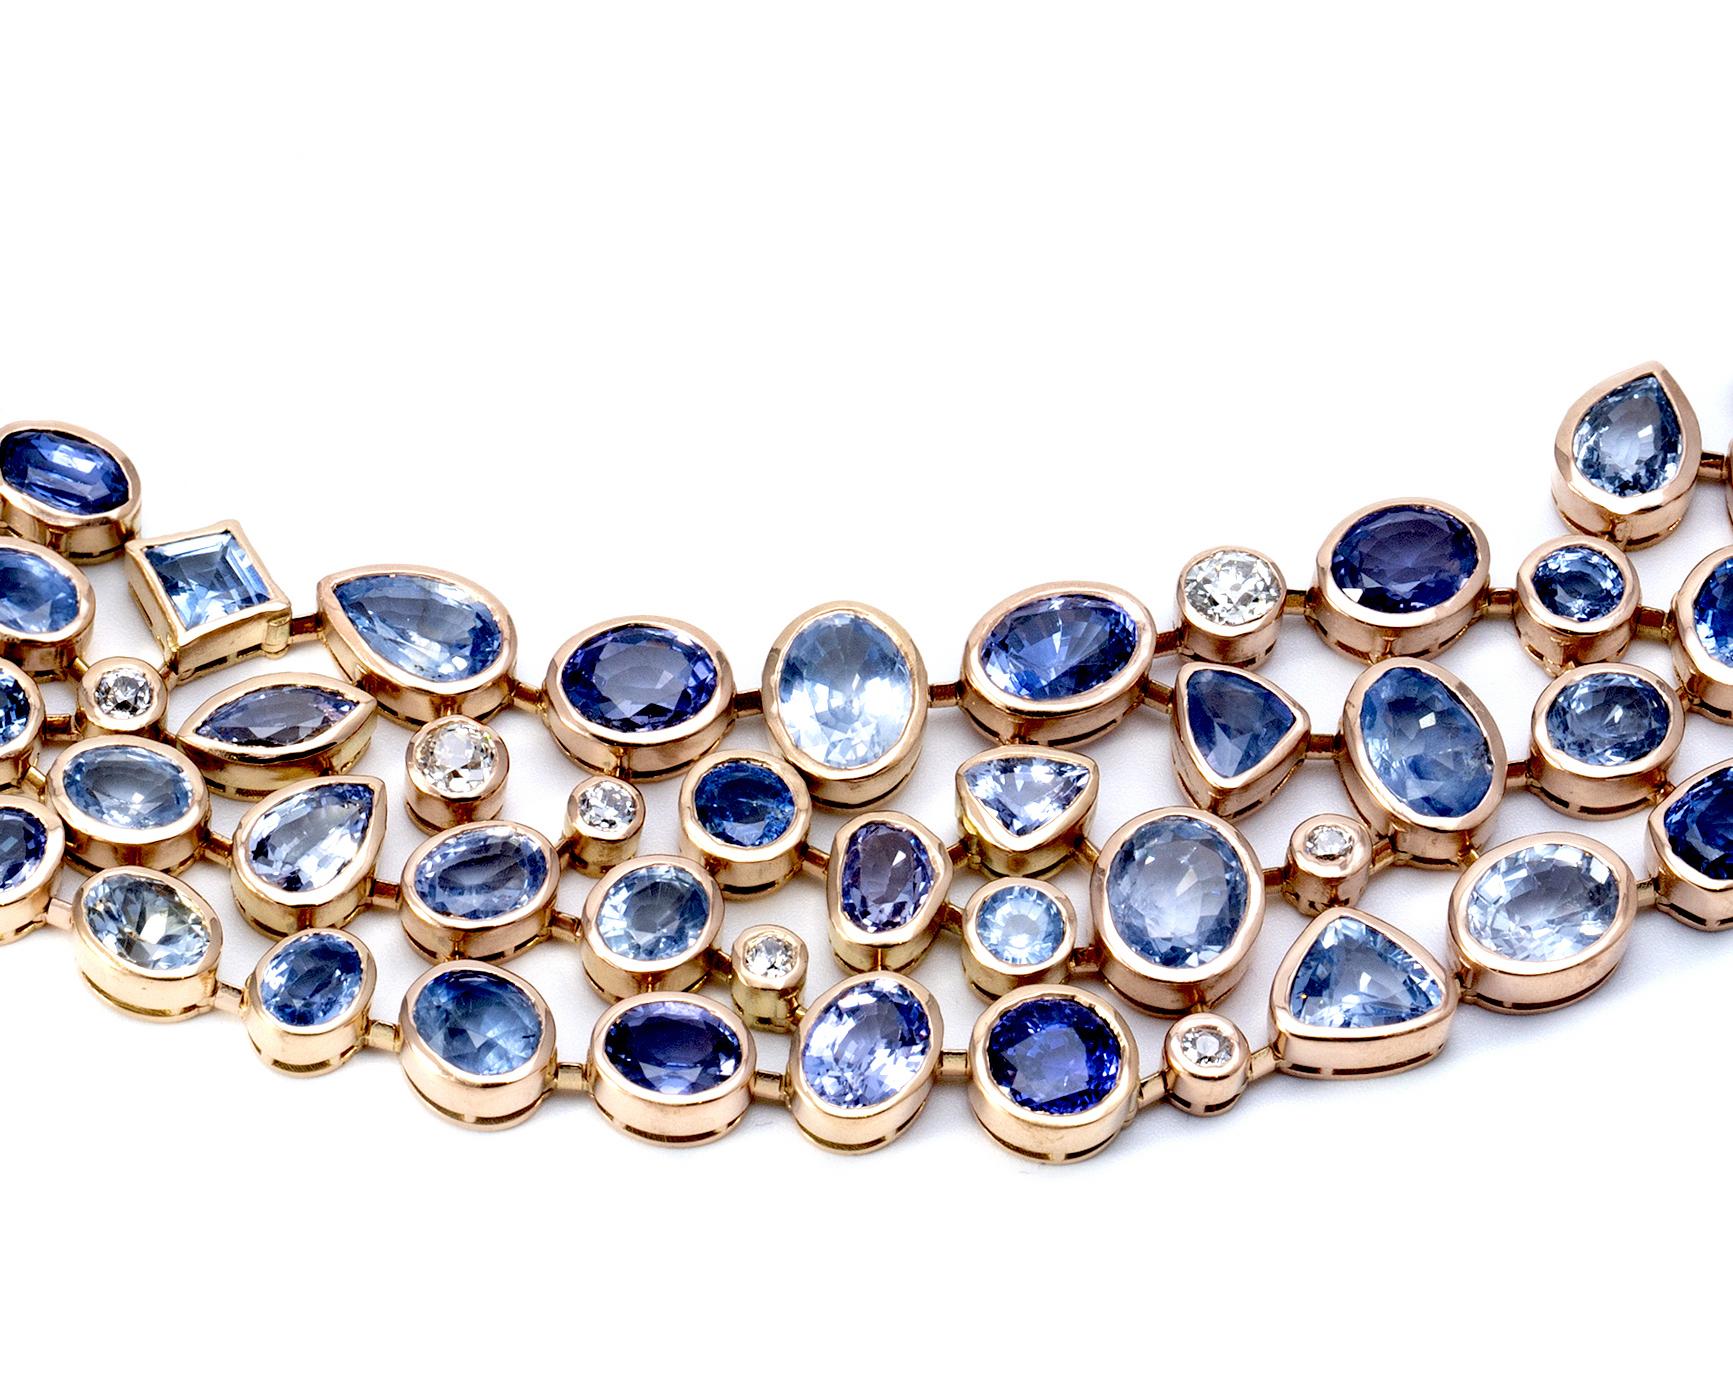 Collier en or rose avec  Saphirs de Ceylan non chauffés pour environ 100 carats et environ 7 carats de diamants. 
(181,7) grammes
Ce collier a été réalisé par un designer français dans les années 80. 
Il s'assoit magnifiquement autour du cou. 
Il